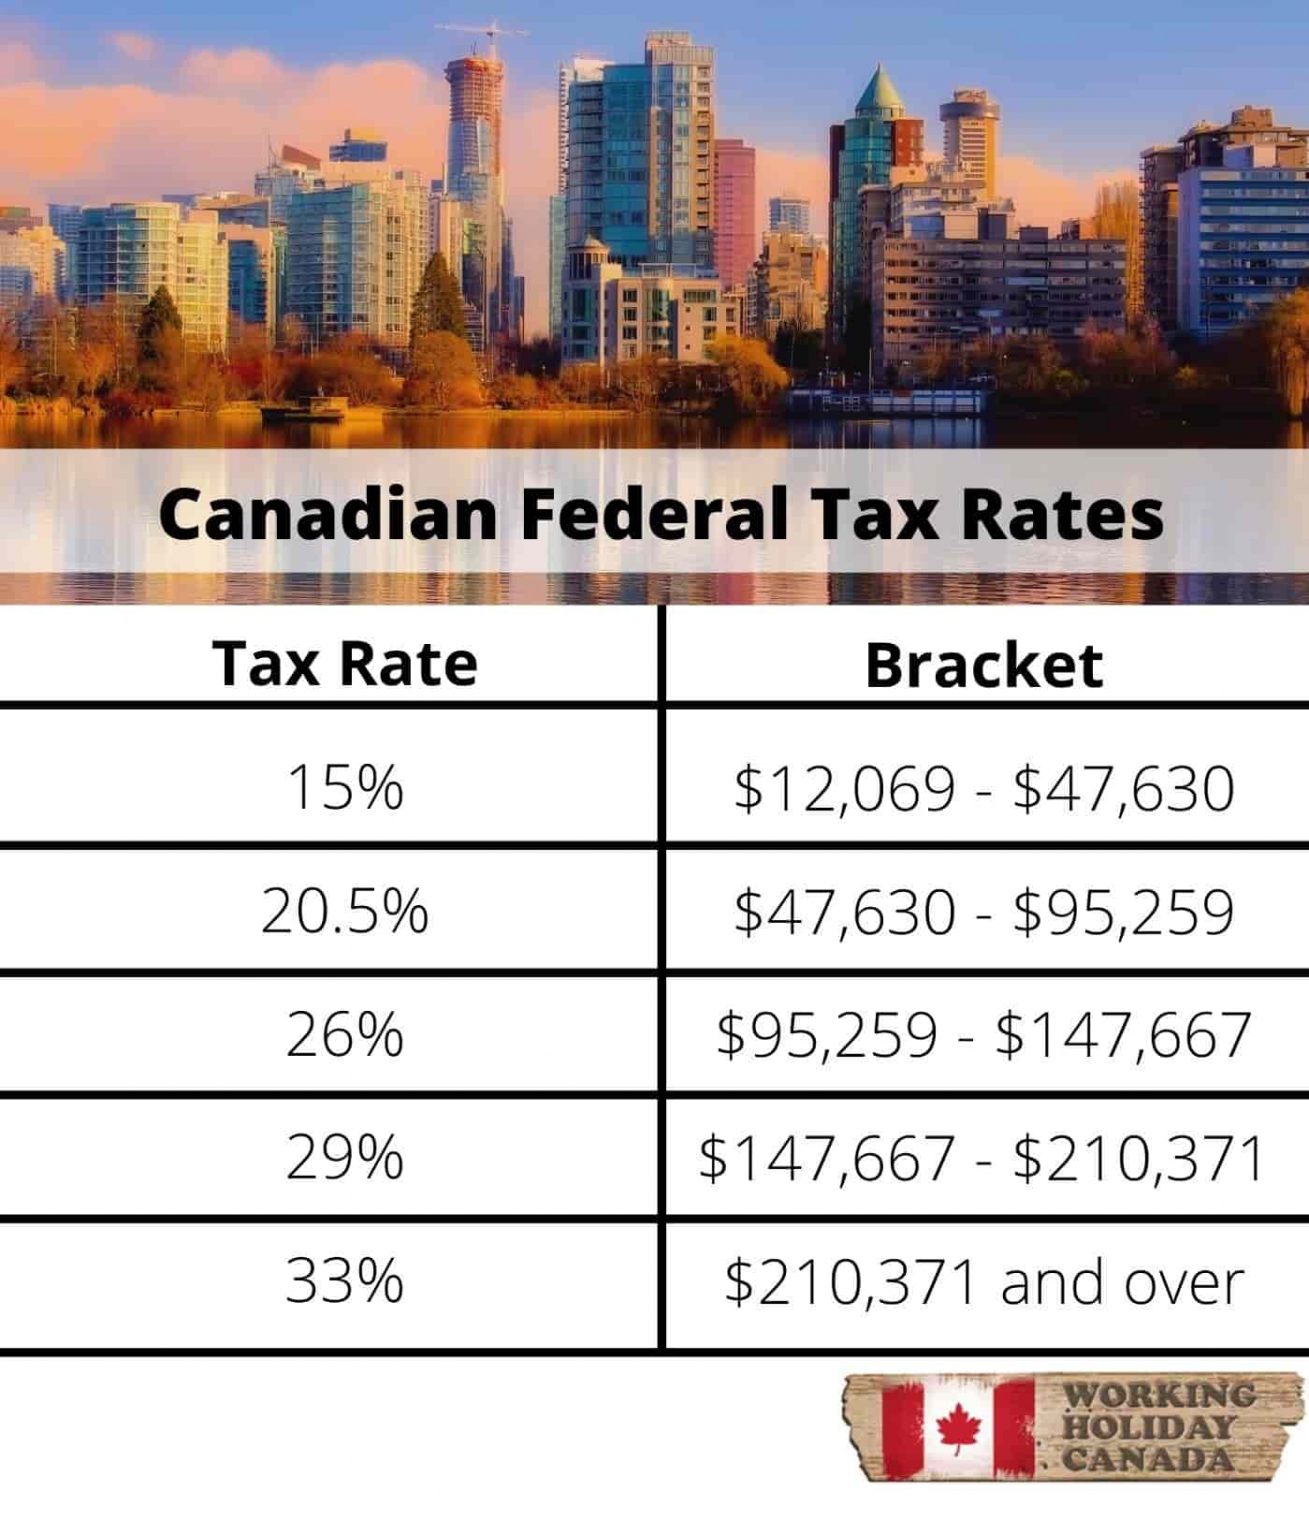 Les bases de la fiscalité au Canada